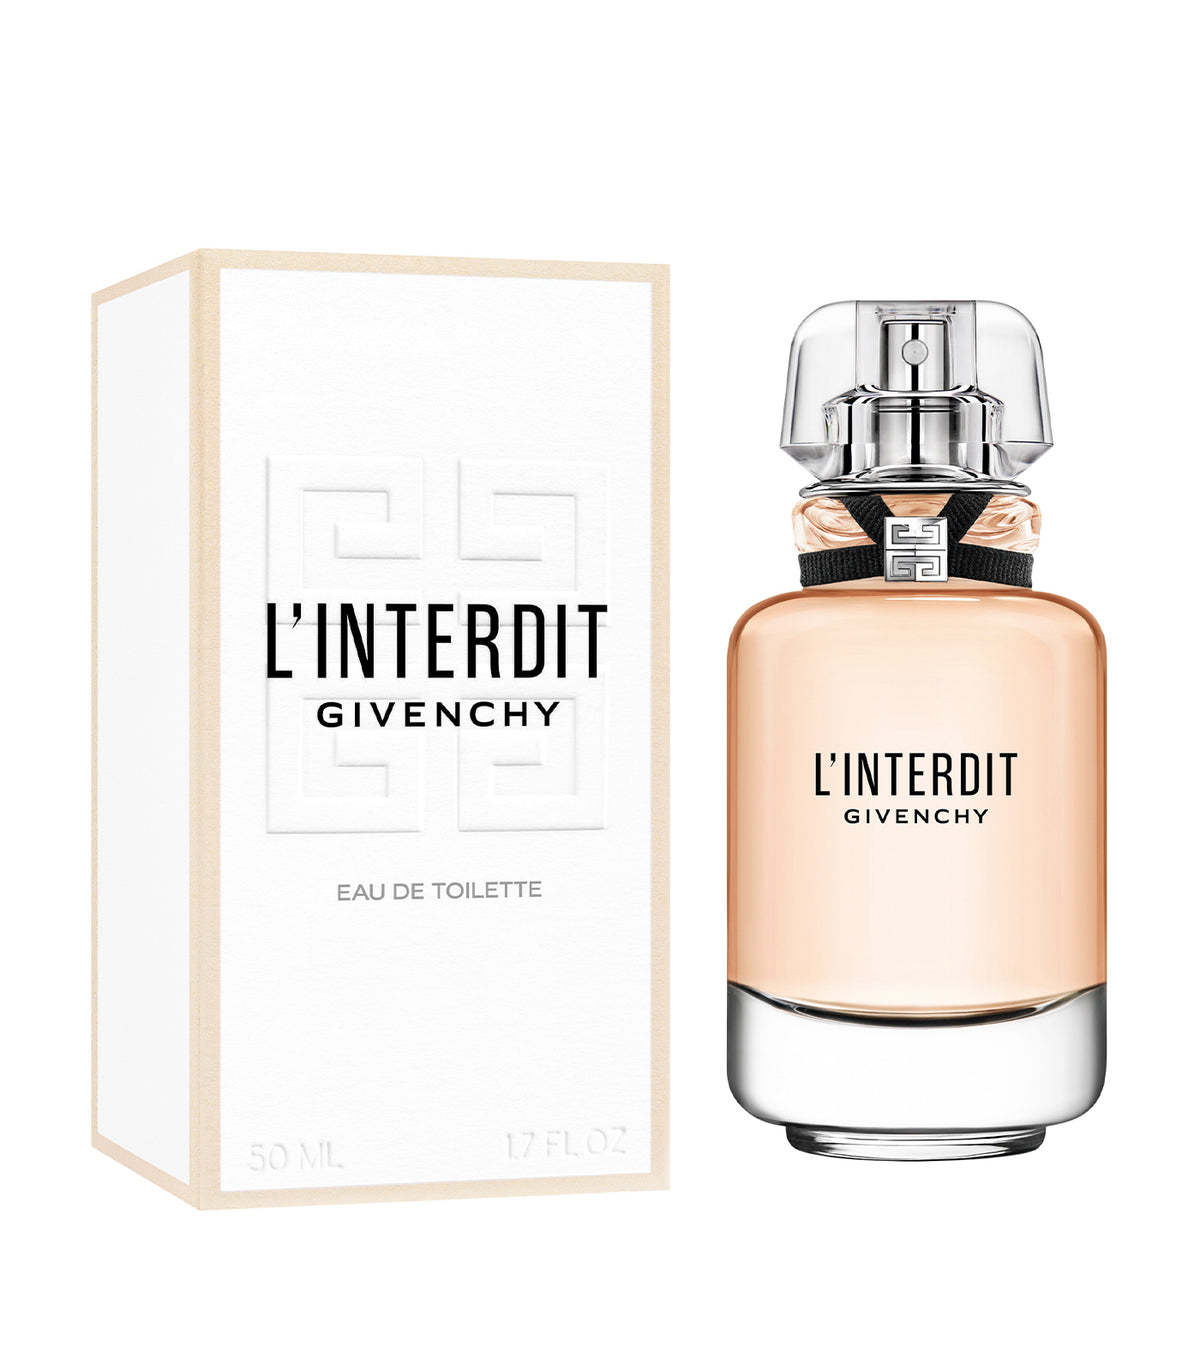 GIVENCHY L'INTERDIT Eau de Toilette by Parfums Givenchy